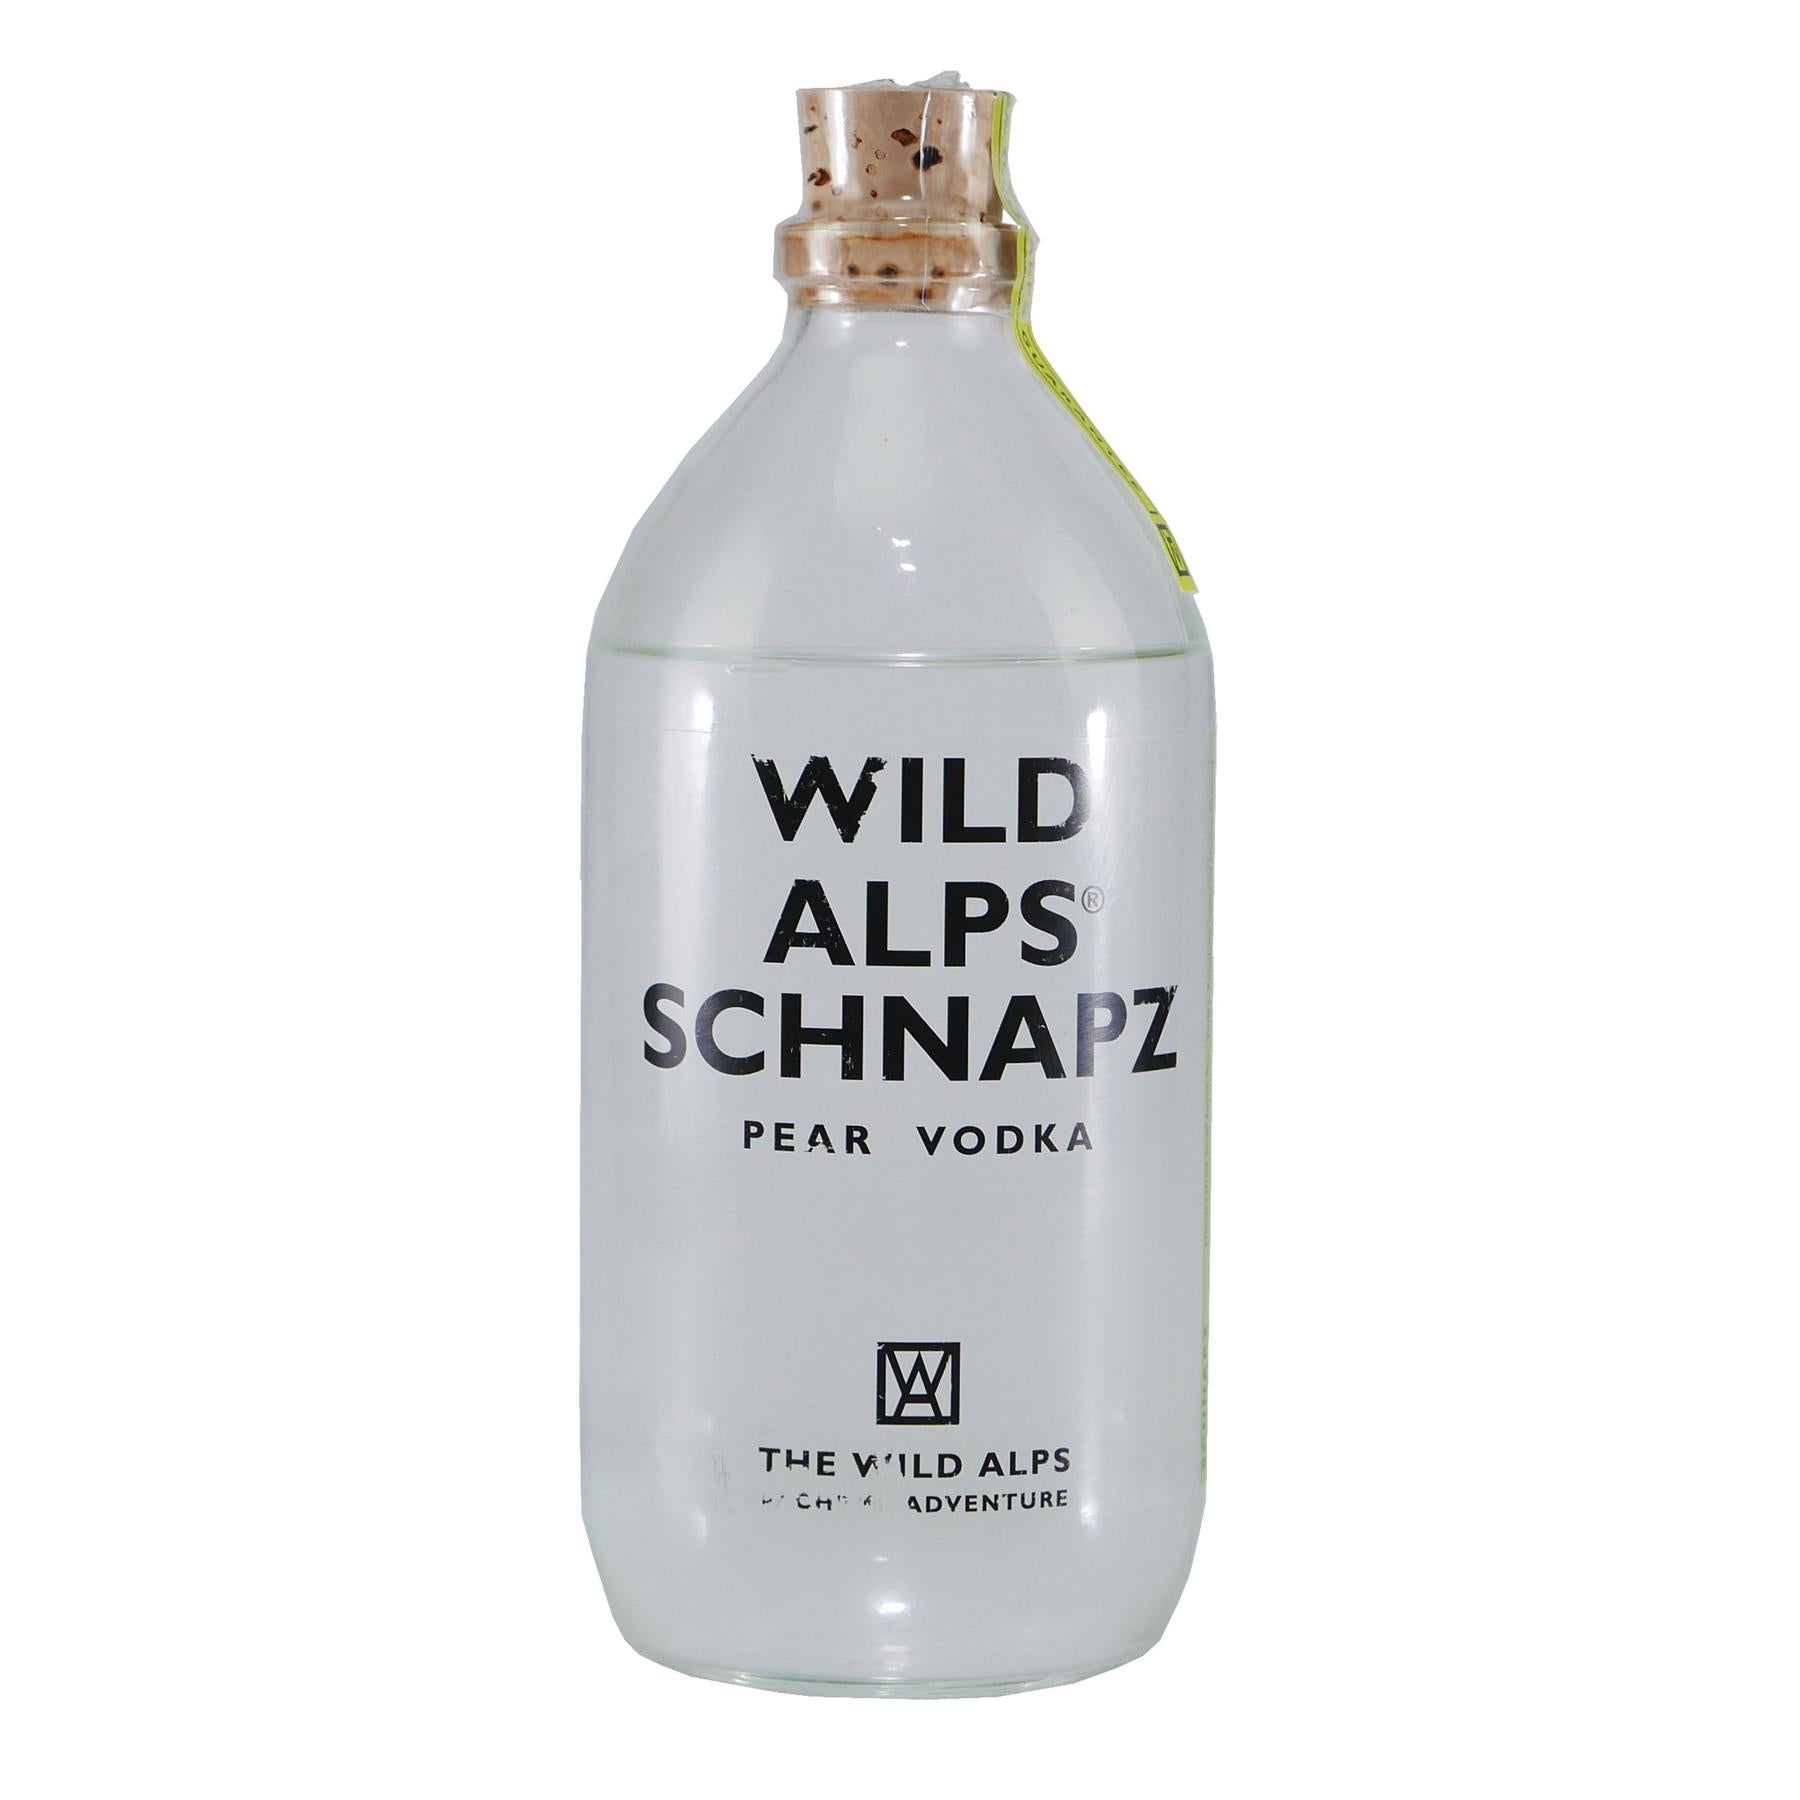 Wild Alps Schnapz - Obstbrand aus der Schweiz